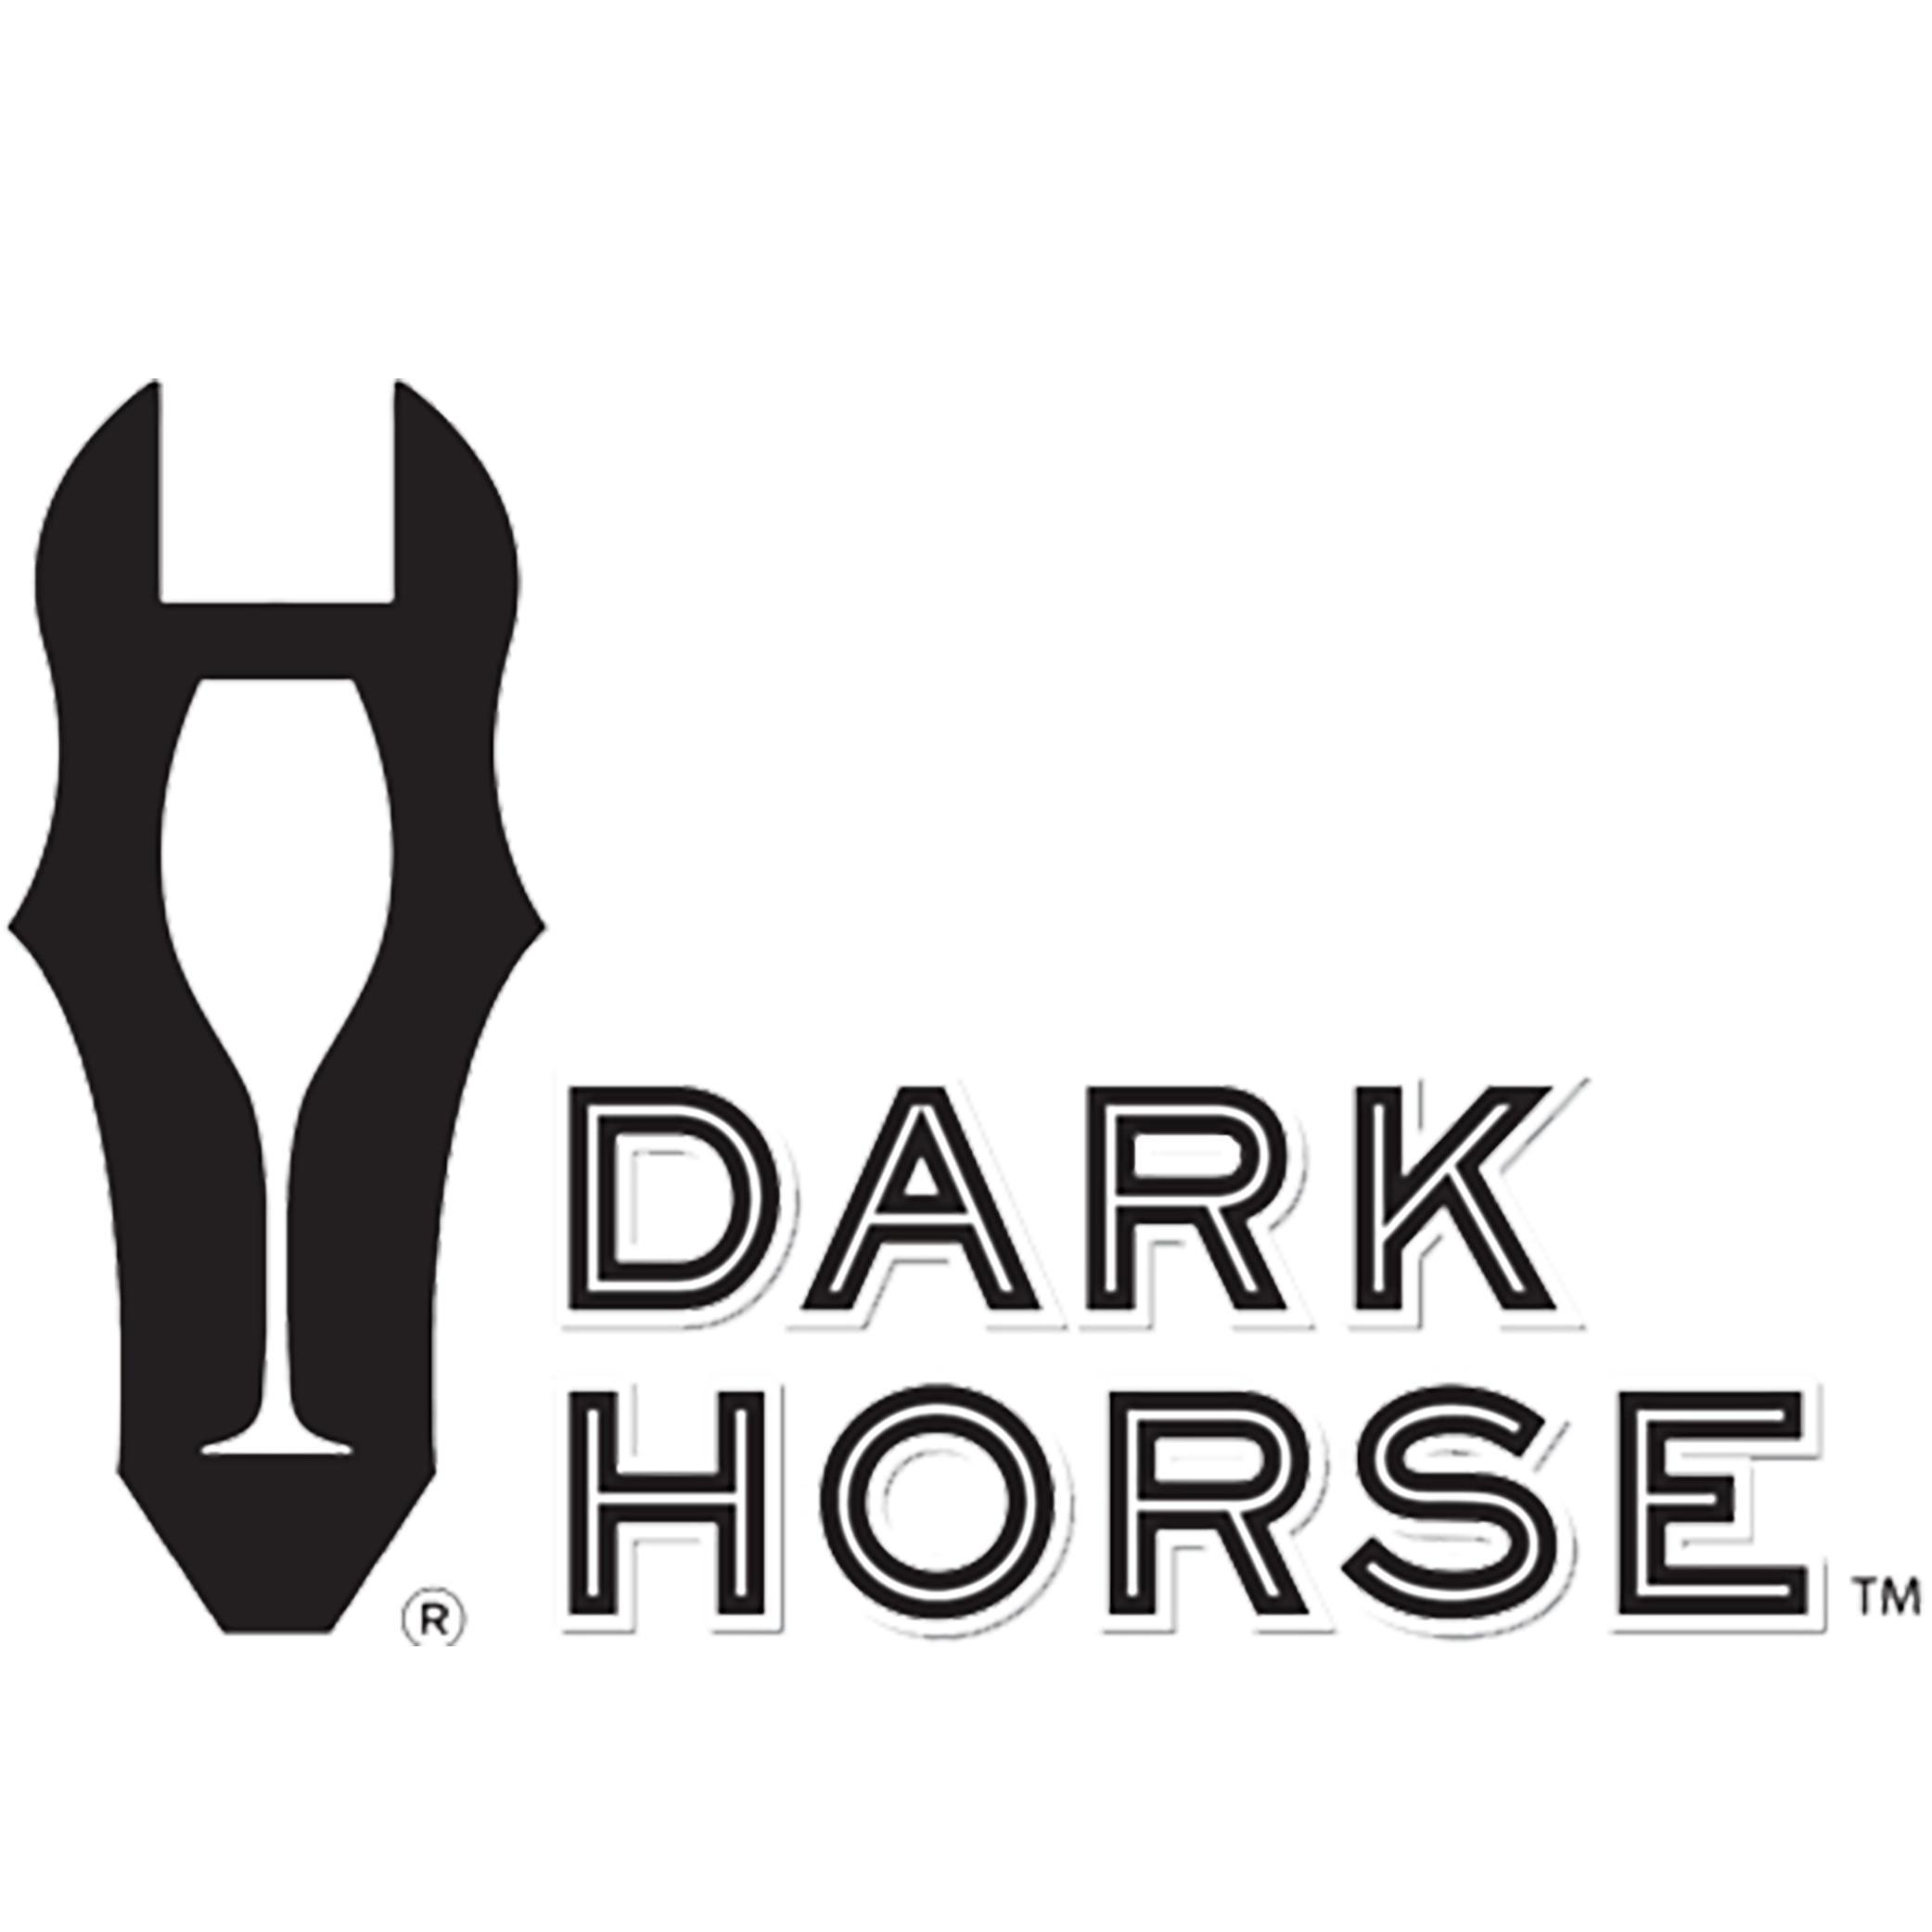 SF Horse Logo - Live Artsdark horse